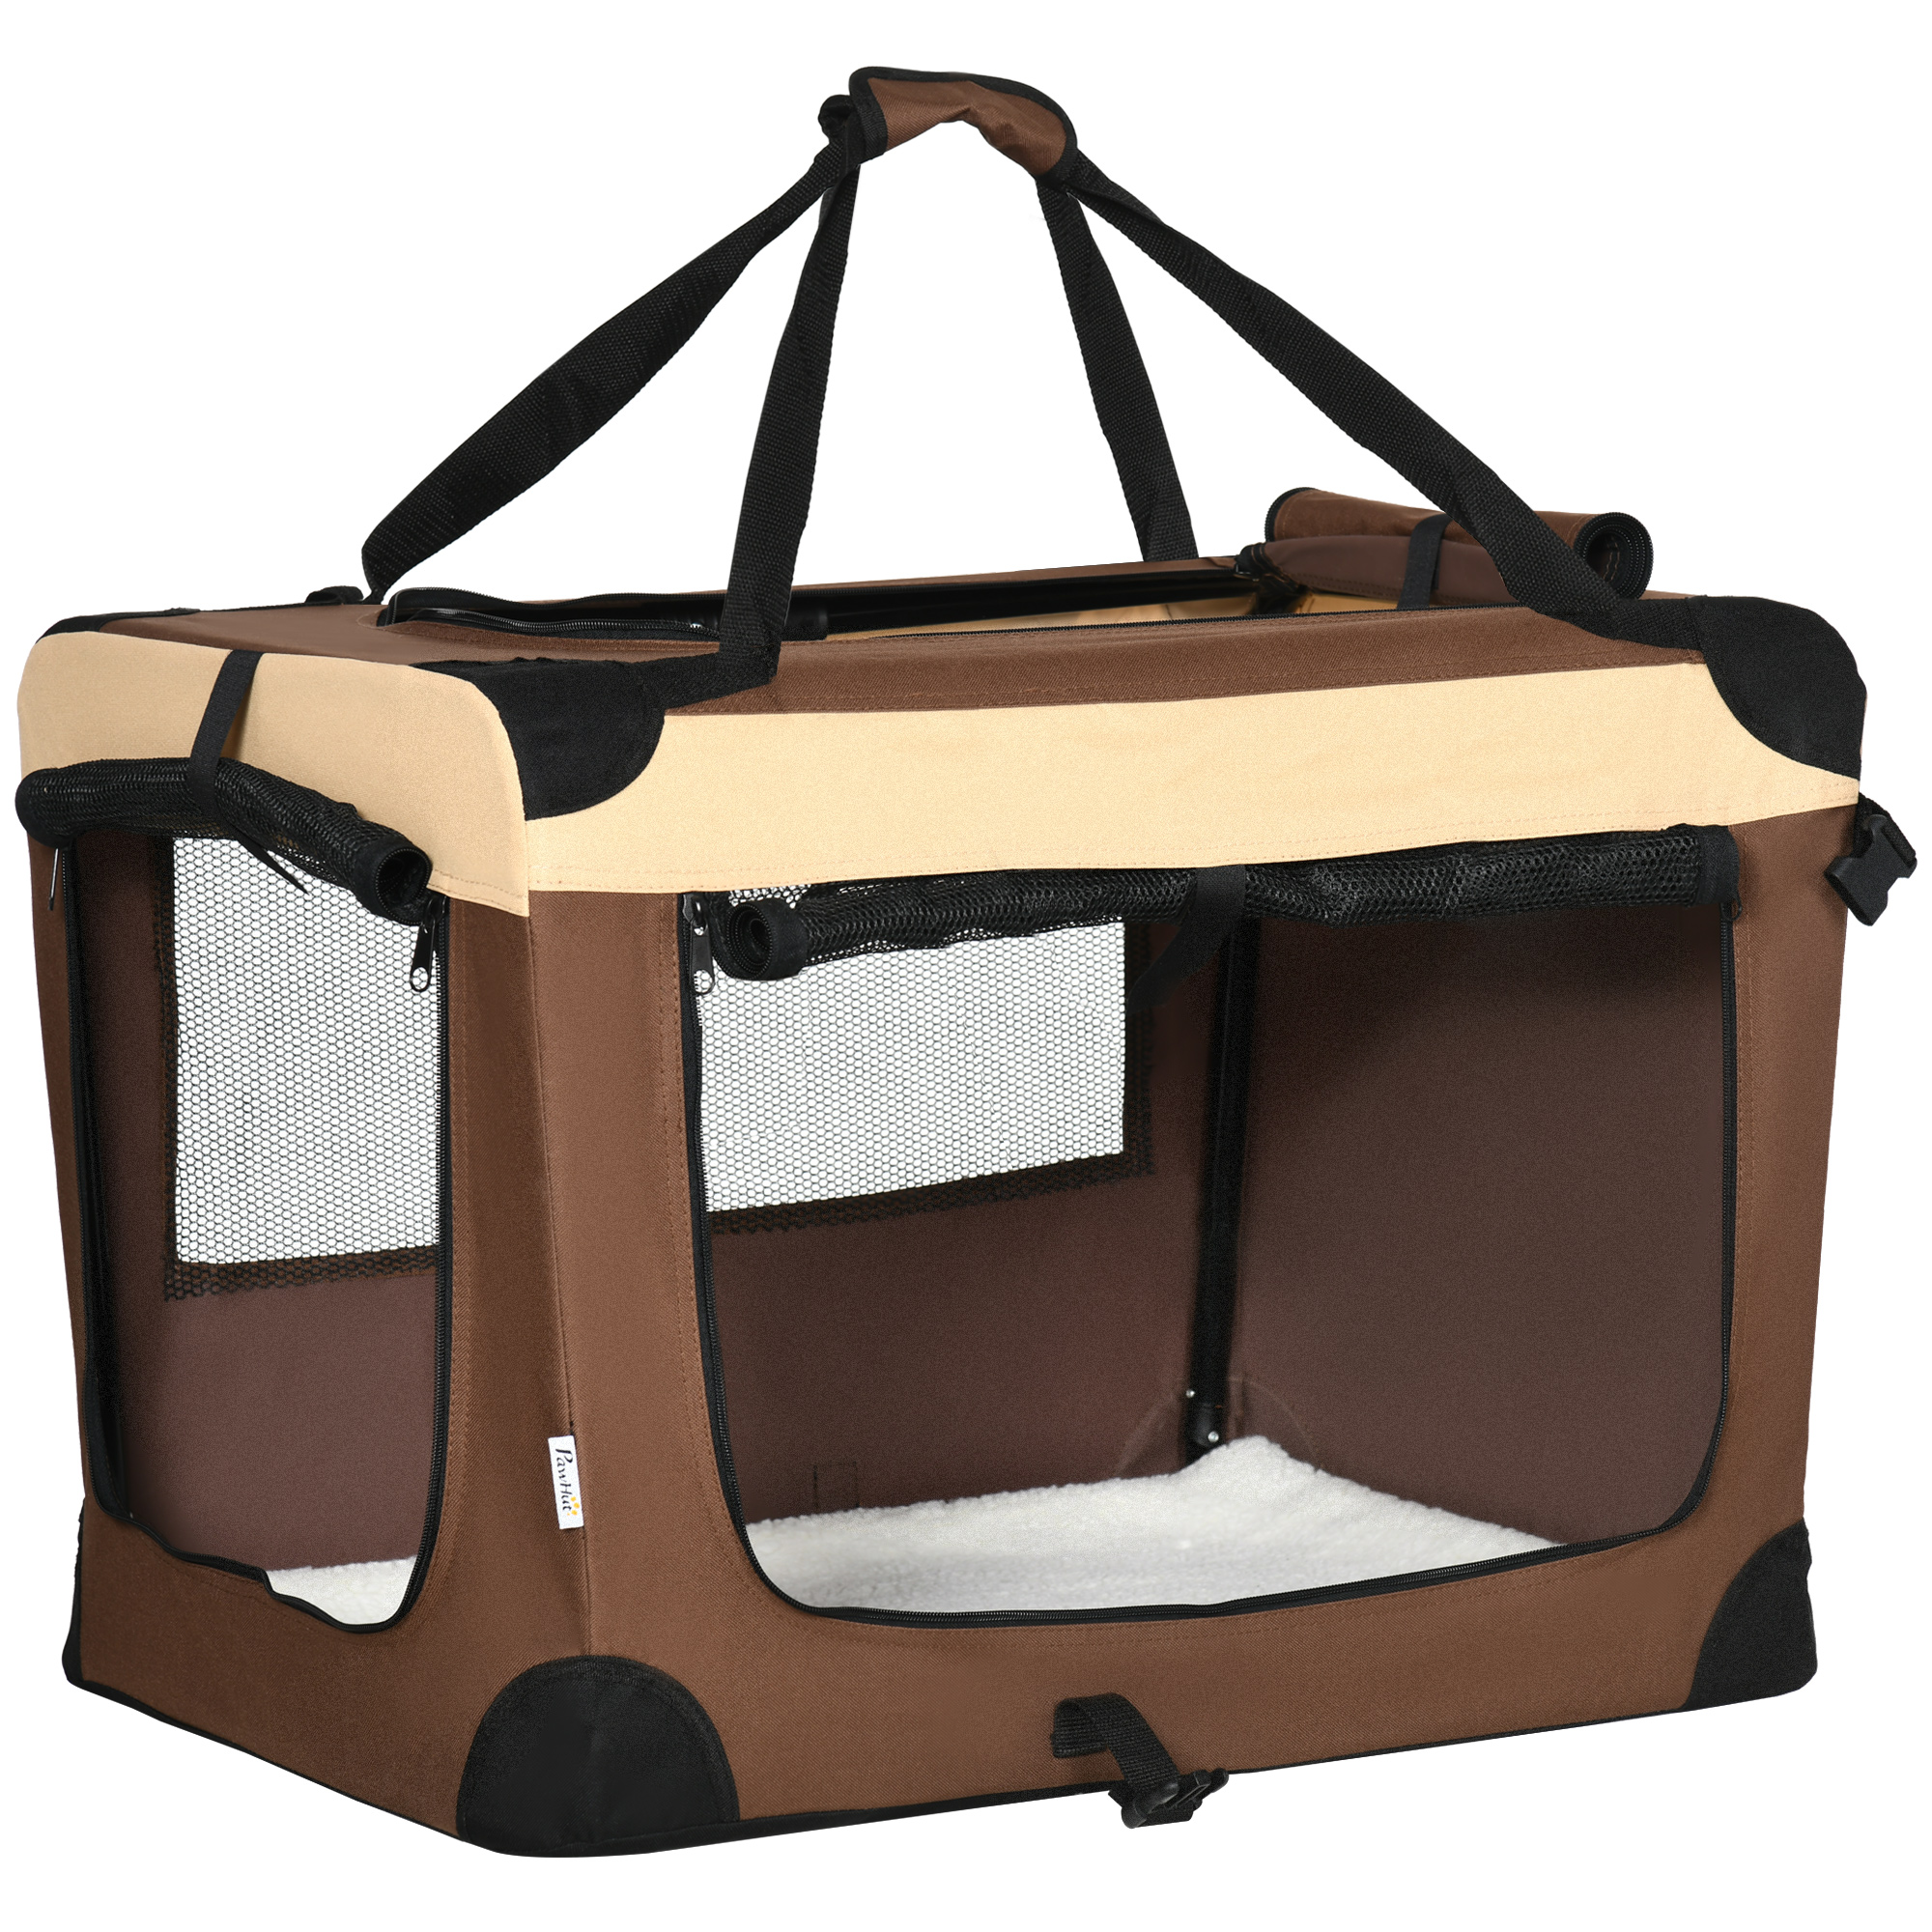 Pawhut sac de transport pour chien chat - siège auto pour chien chat -  housse de siège pour chien chat - déhoussable, sangles ajustables, attache  - coton gris - Conforama